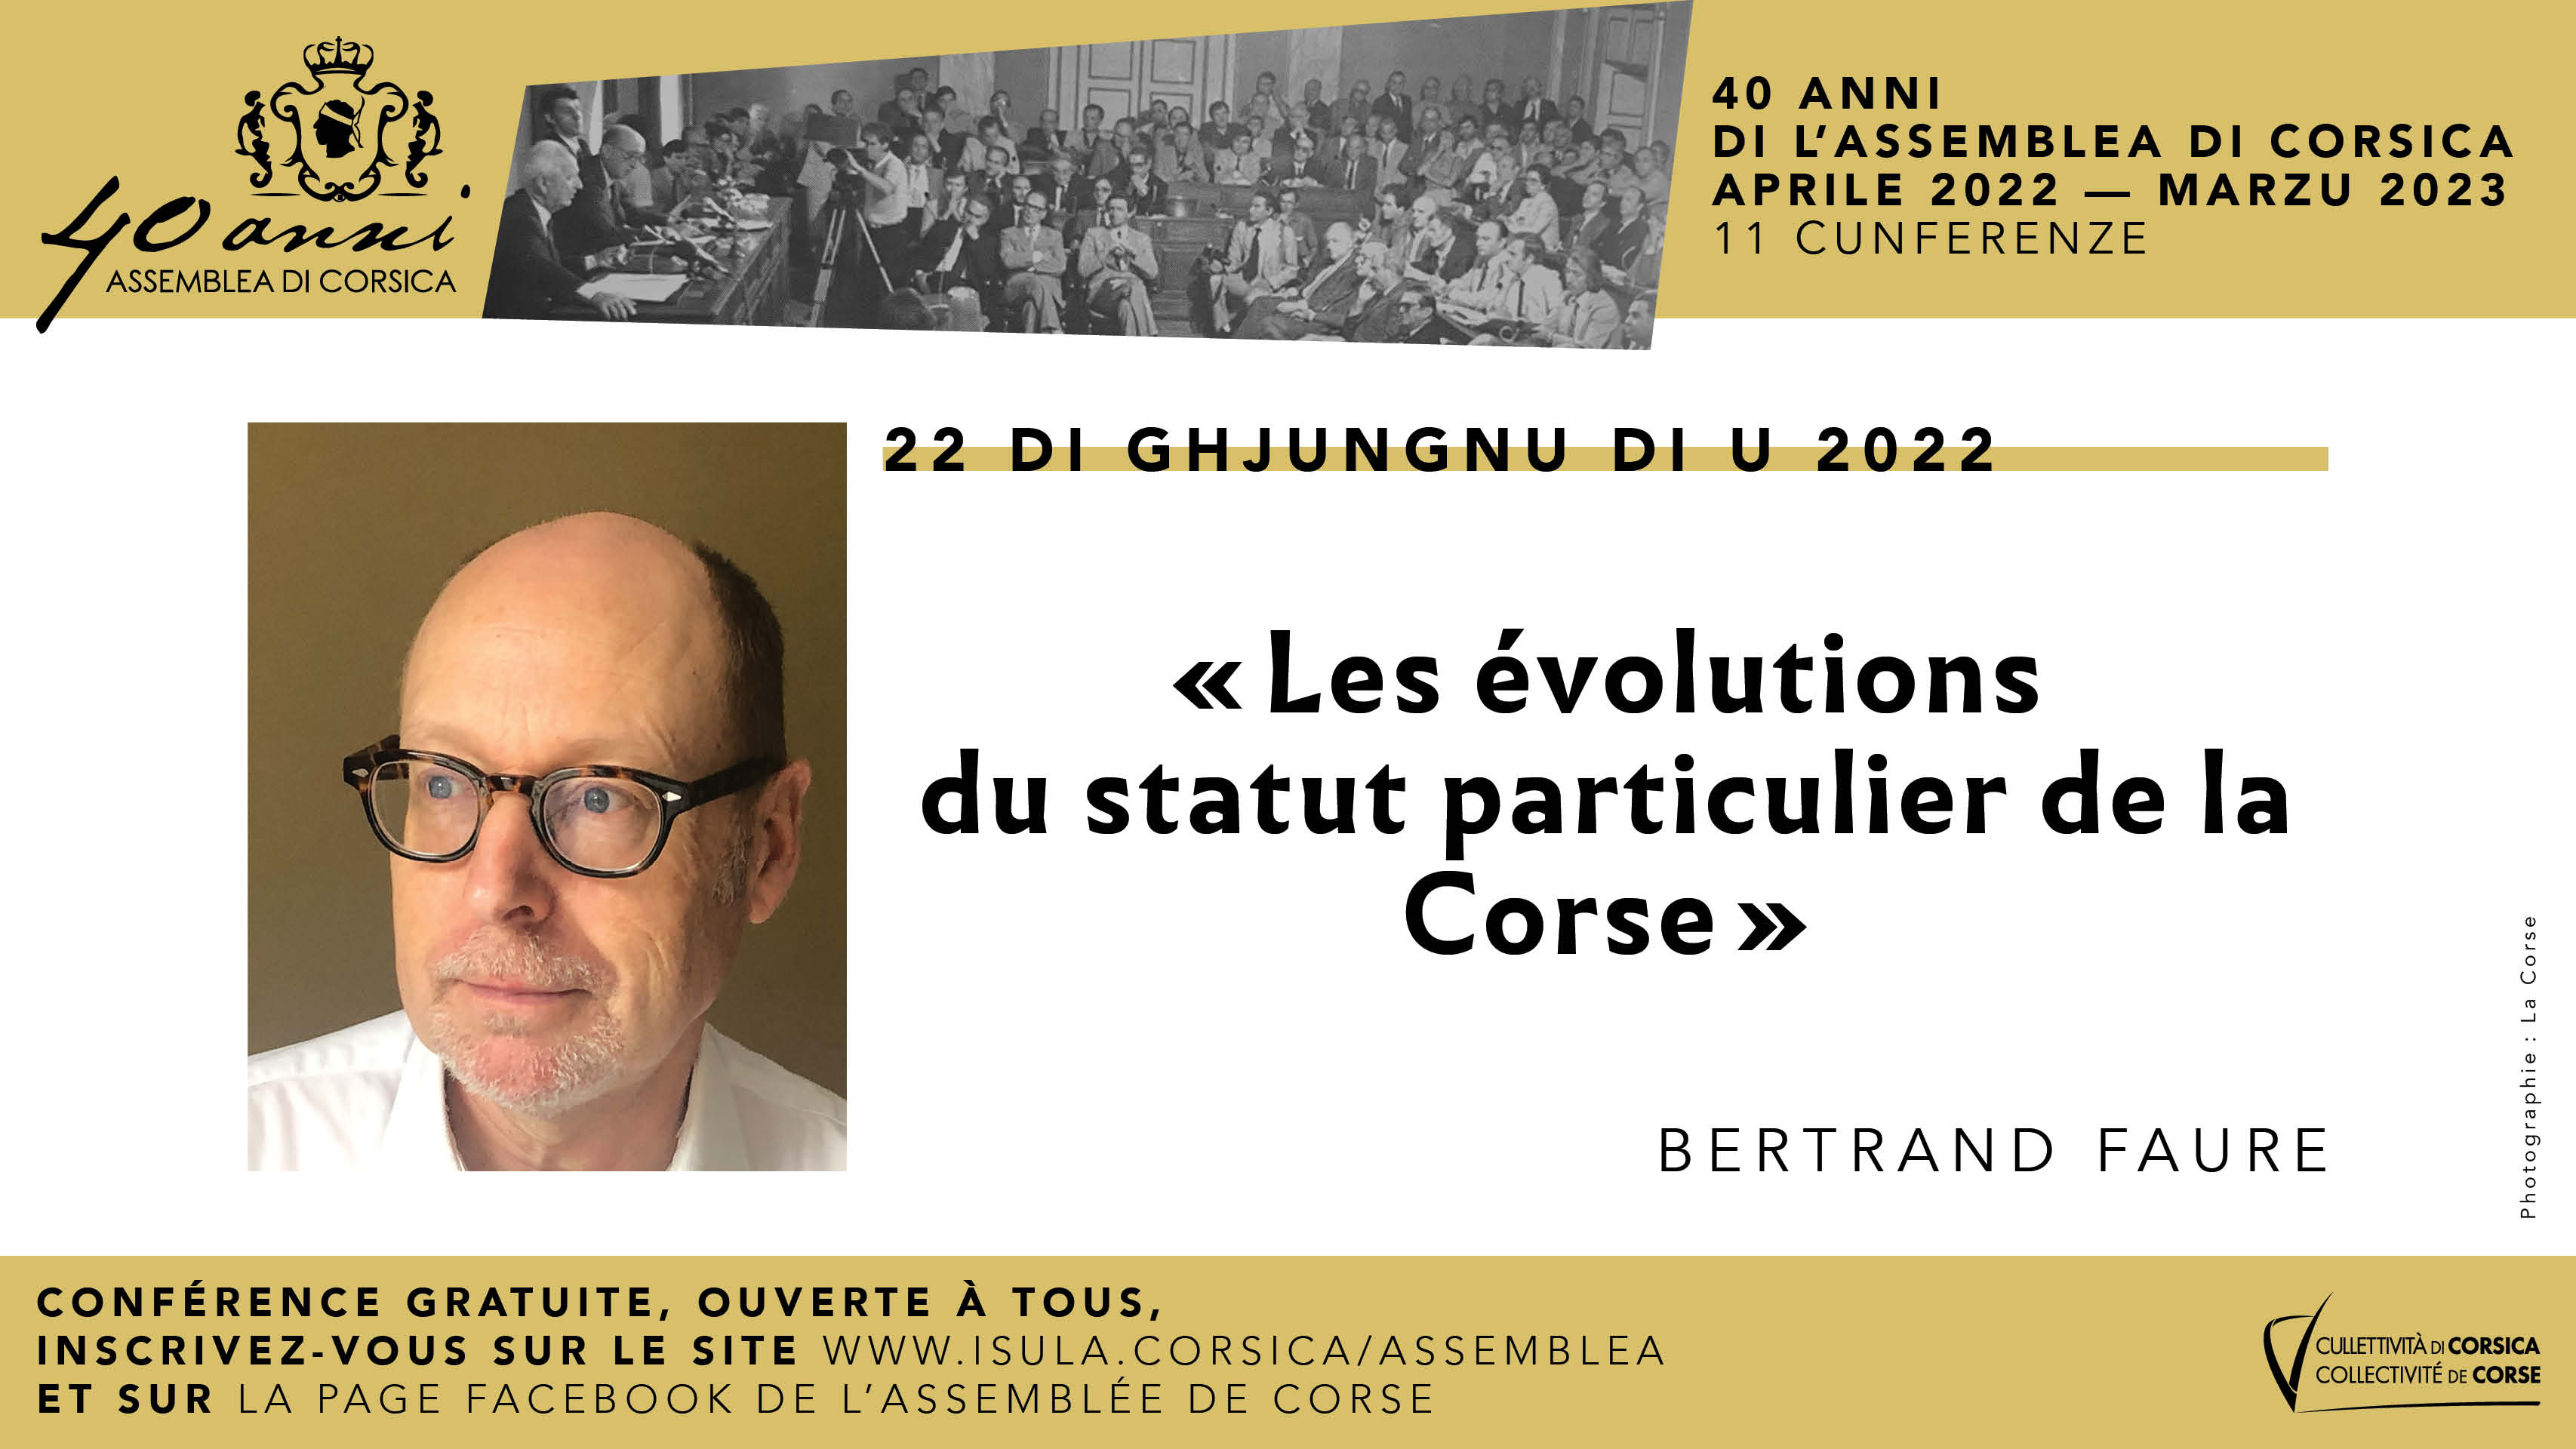 Bertrand Faure poursuit le cycle de conférences consacré aux 40 ans de l'Assemblea di a Corsica